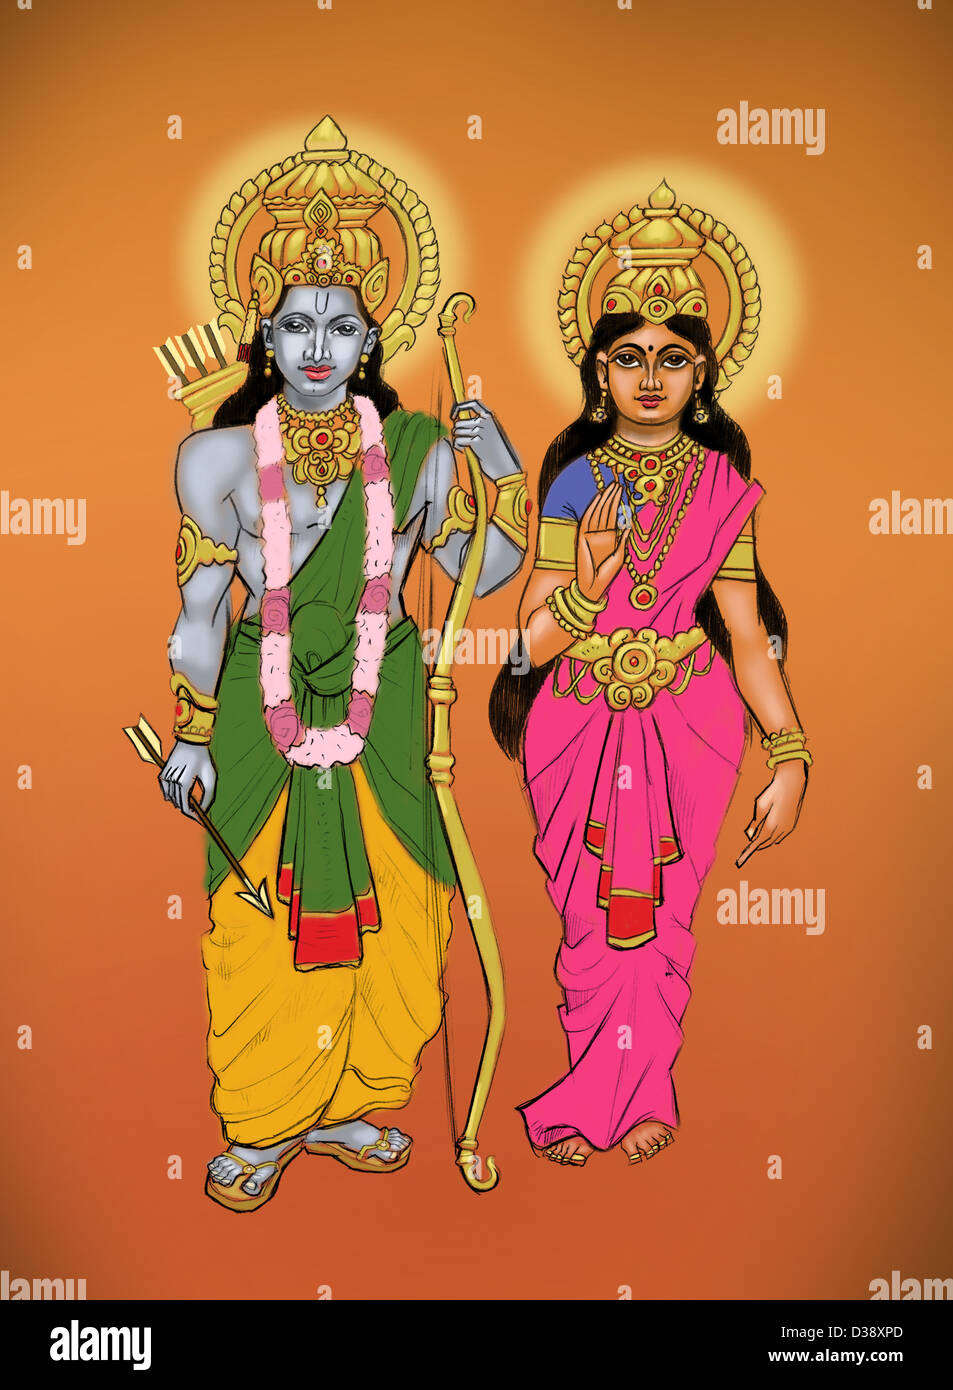 Señor rama con la diosa Sita Fotografía de stock - Alamy